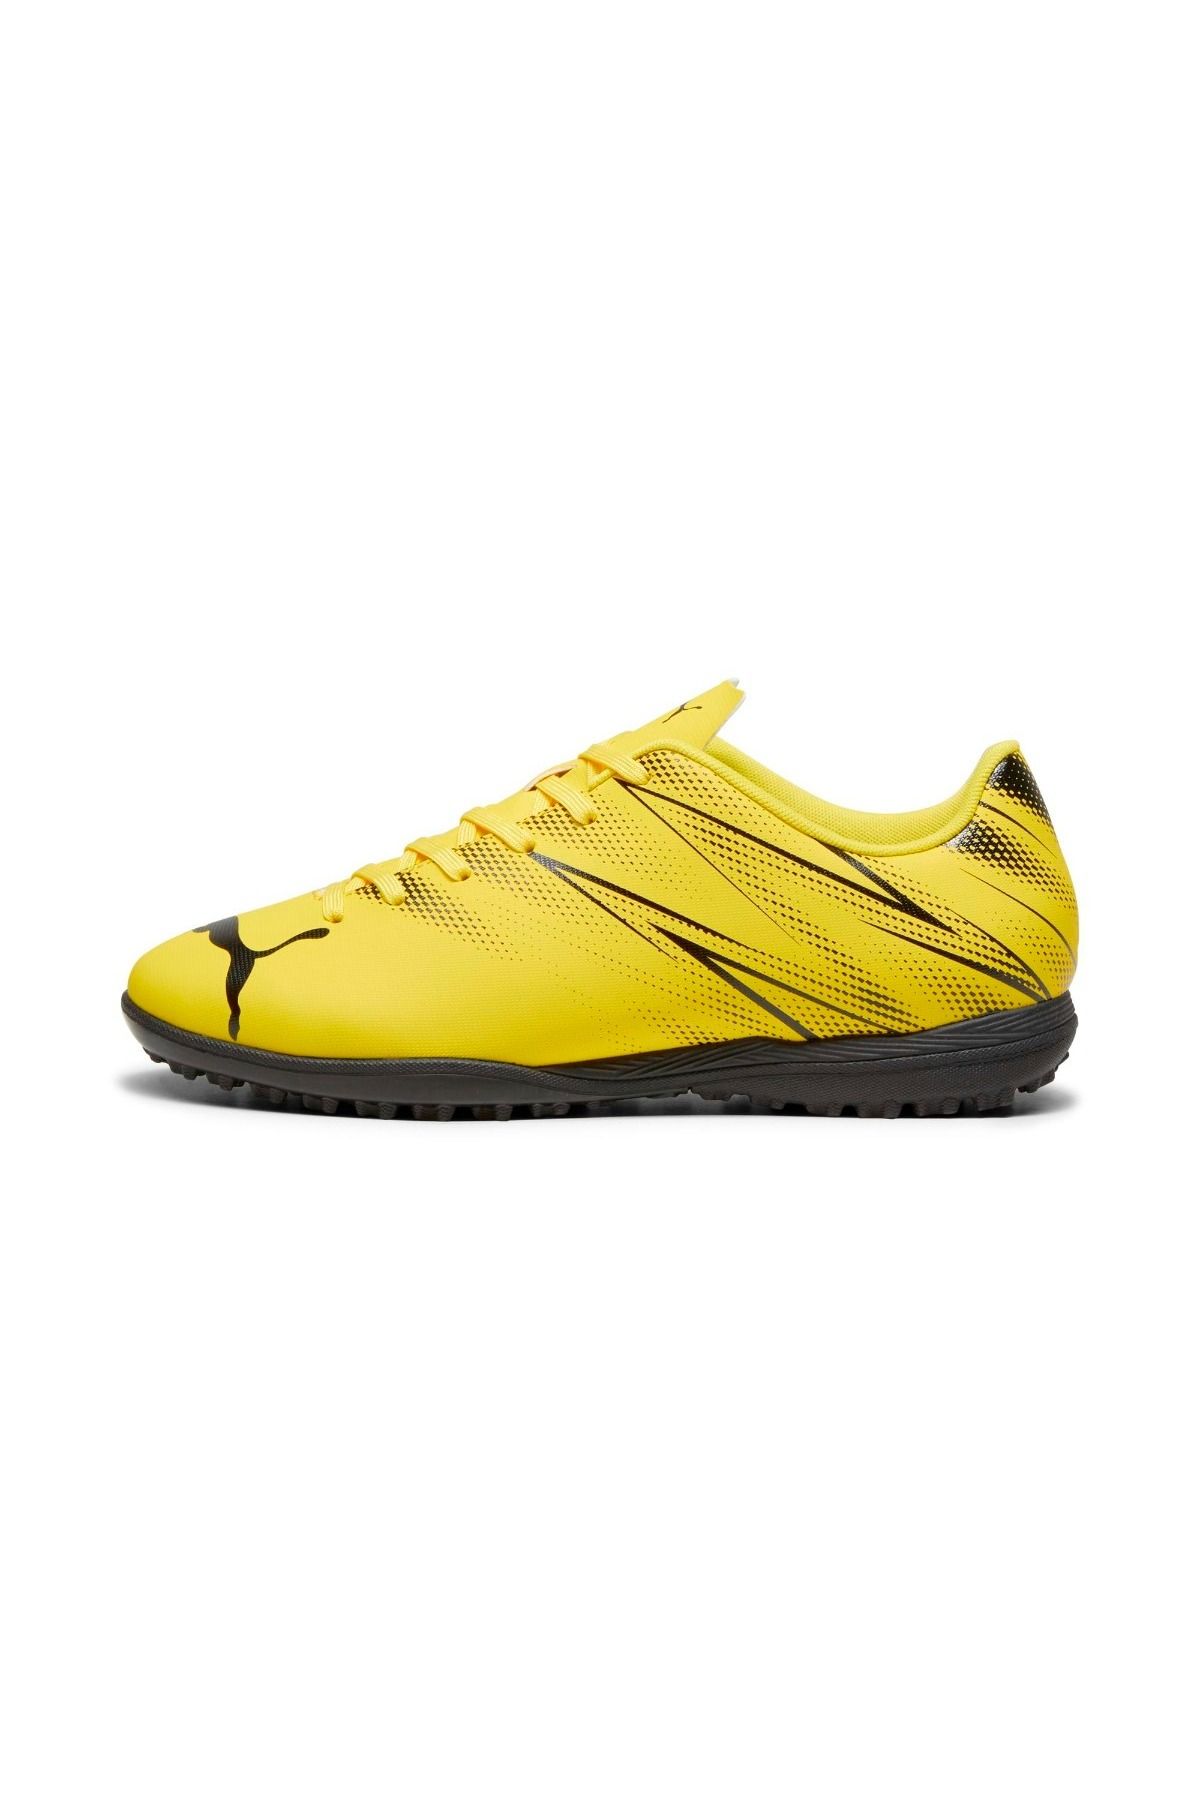 Puma Erkek Halı Saha Futbol Ayakkabısı Attacanto Tt Yellow Blaze- Black 10747802